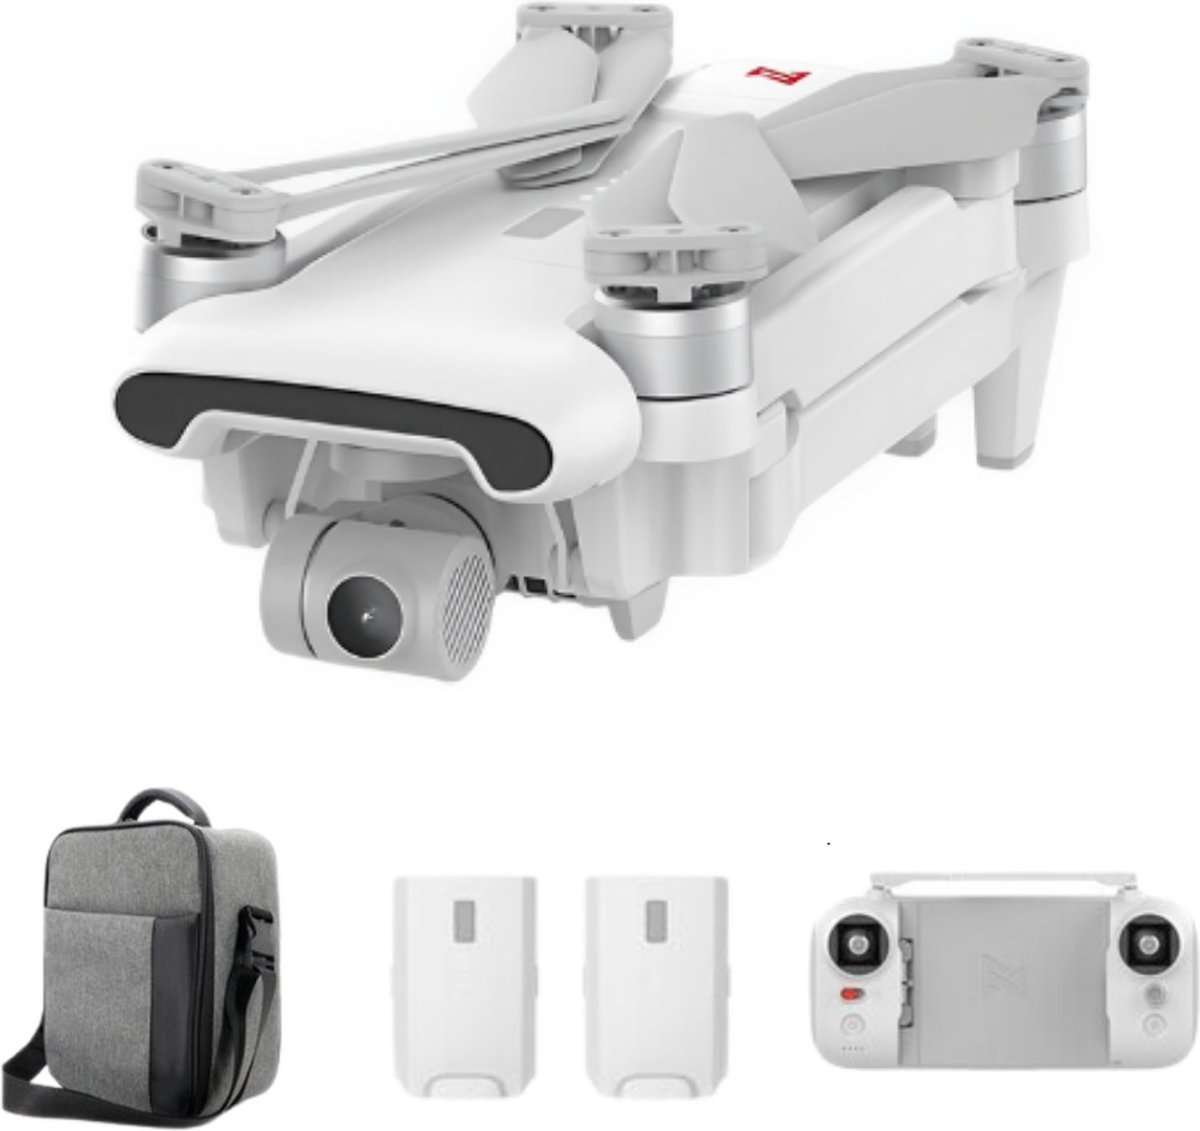 Fimi X8SE Professionele 4k Drone - 10 km Bereik - Regen & Sneeuw Bestendig - Automatisch Volgen & Cirkelen - Beveiligde Functies - Inclusief 2 Batterijen/Opslagcase/Accessoires